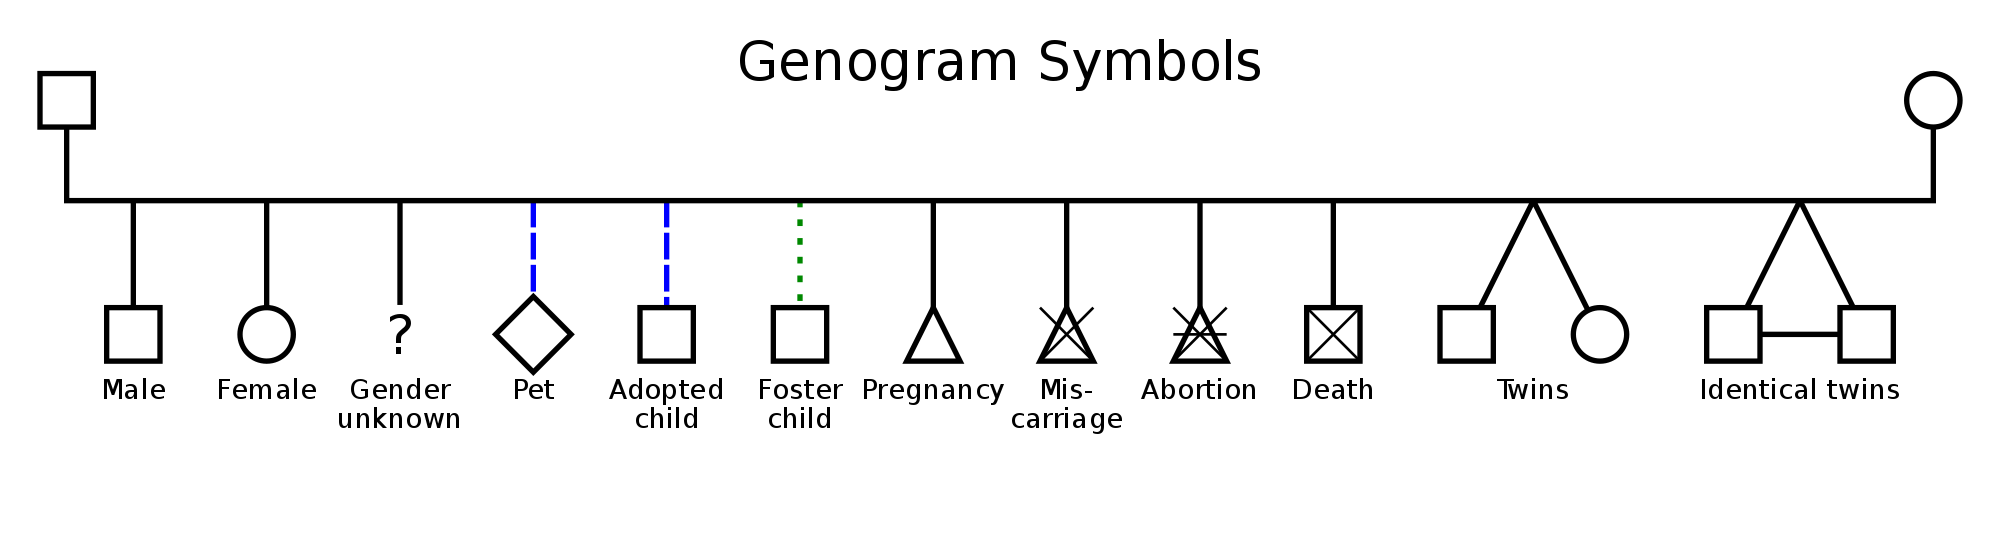 Genogram symbols